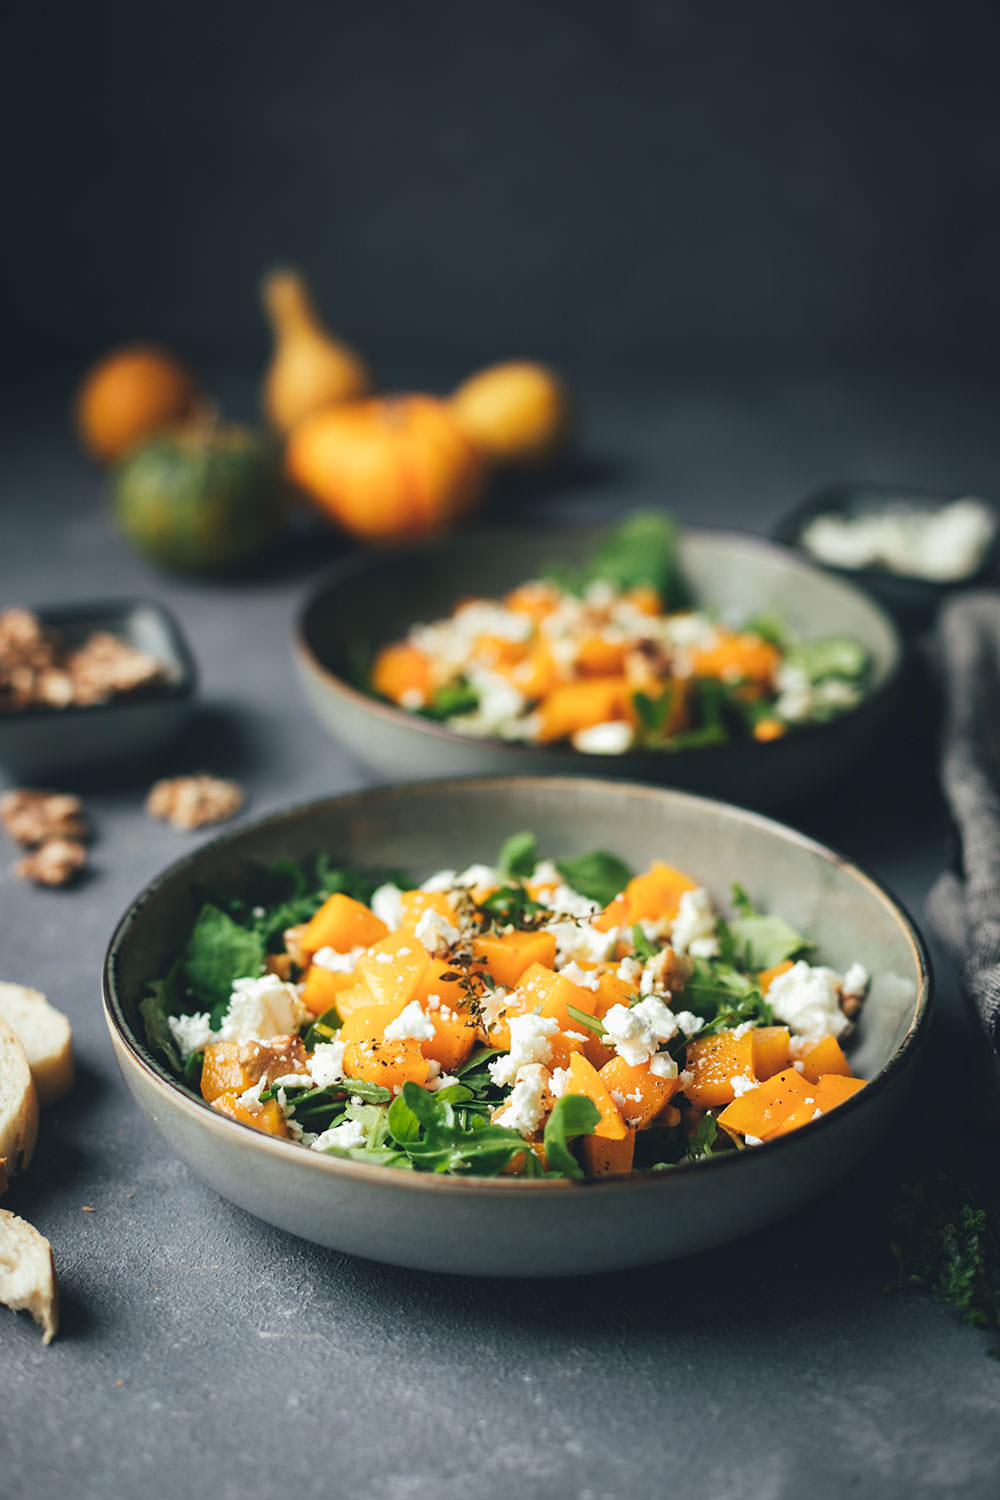 Rezept für lauwarmen Kürbis-Salat mit Rucola, Feta und Walnüssen | vegetarische Herbstküche | moeyskitchen.com #kürbis #pumpkin #salat #herbstsalat #vegetarisch #veggie #rezepte #foodblogger #kürbissalat #salatrezepte